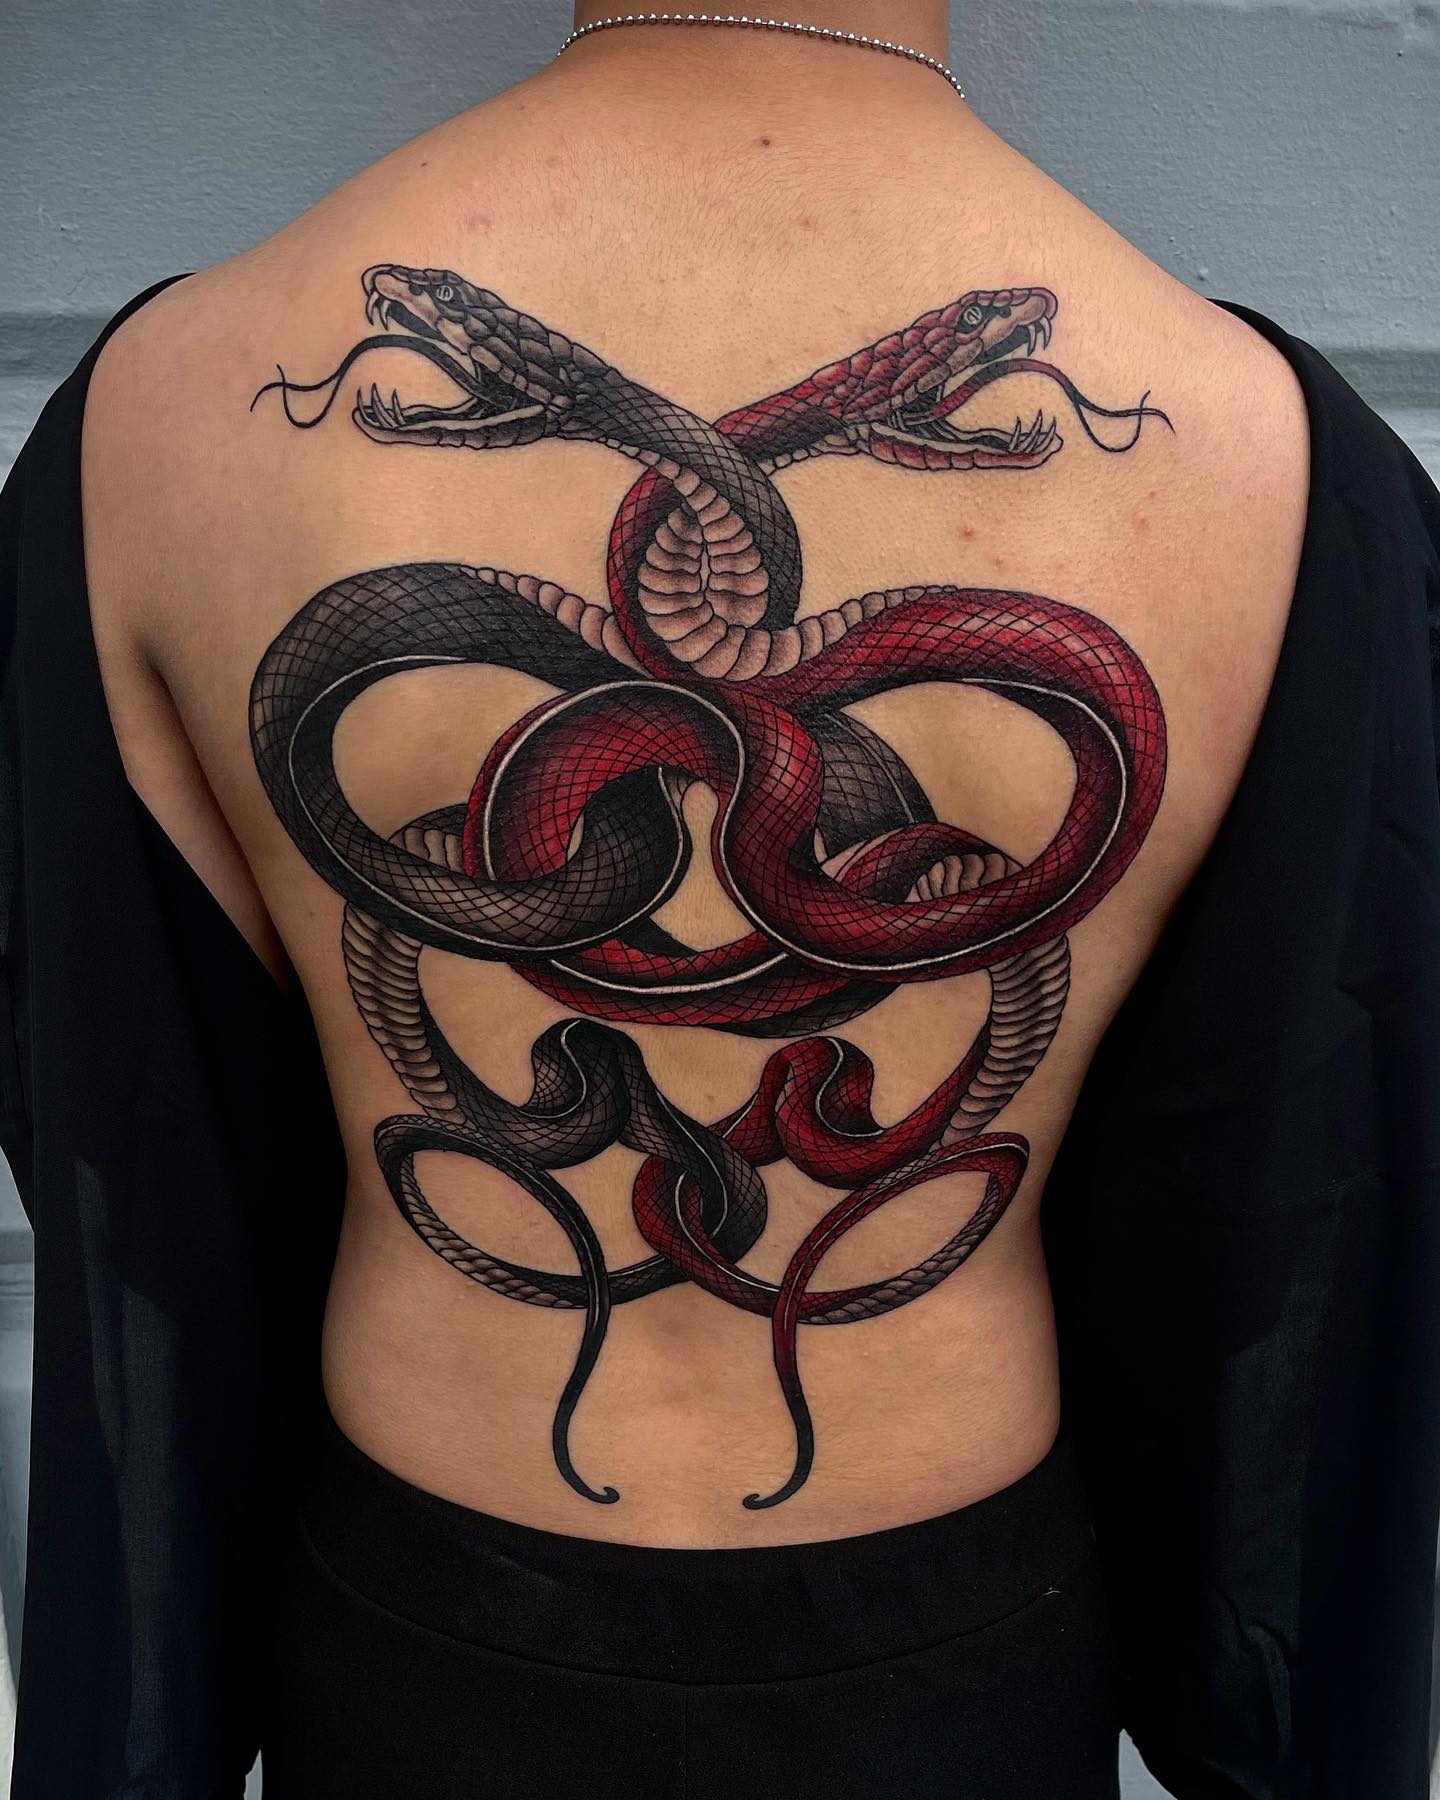 Tatuaje de dos serpientes en la espalda